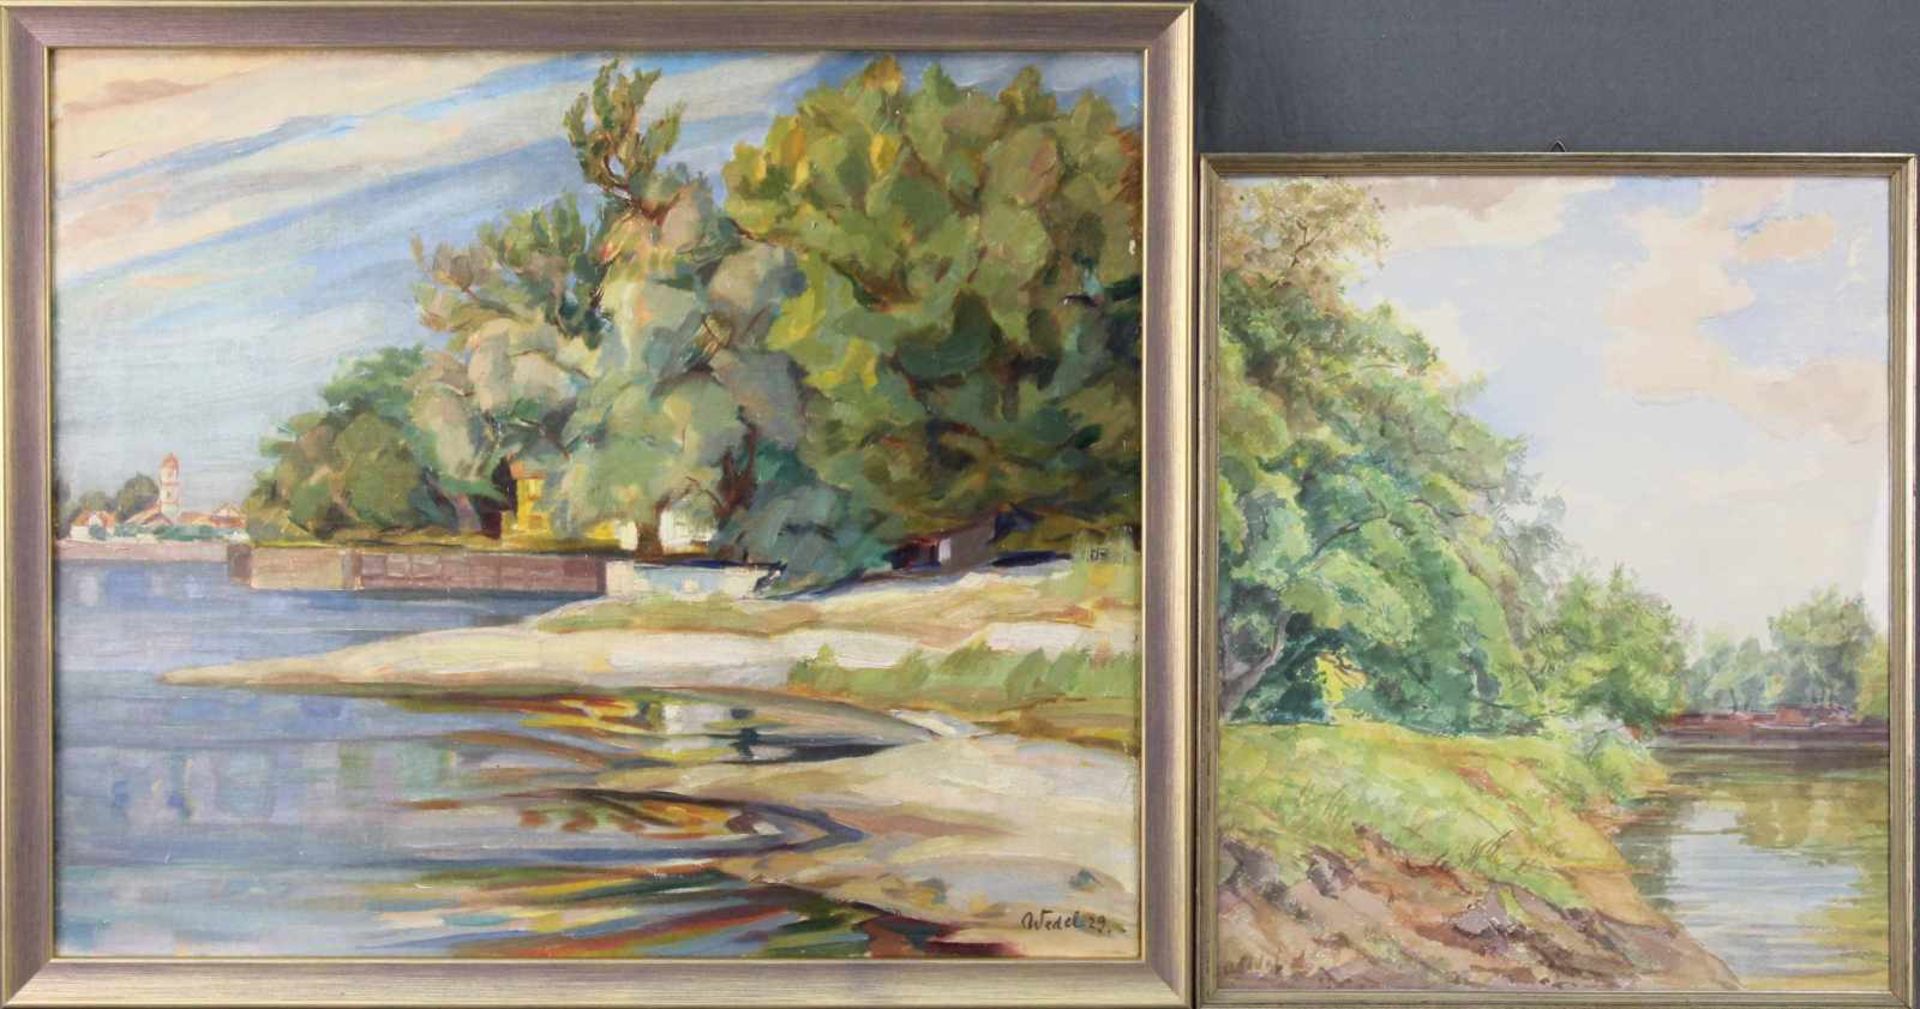 August WEDEL (1885 - 1953). Ufer vor der Stadt. (19)29.51cm x 61 cm. Gemälde. Öl auf Leinwand.